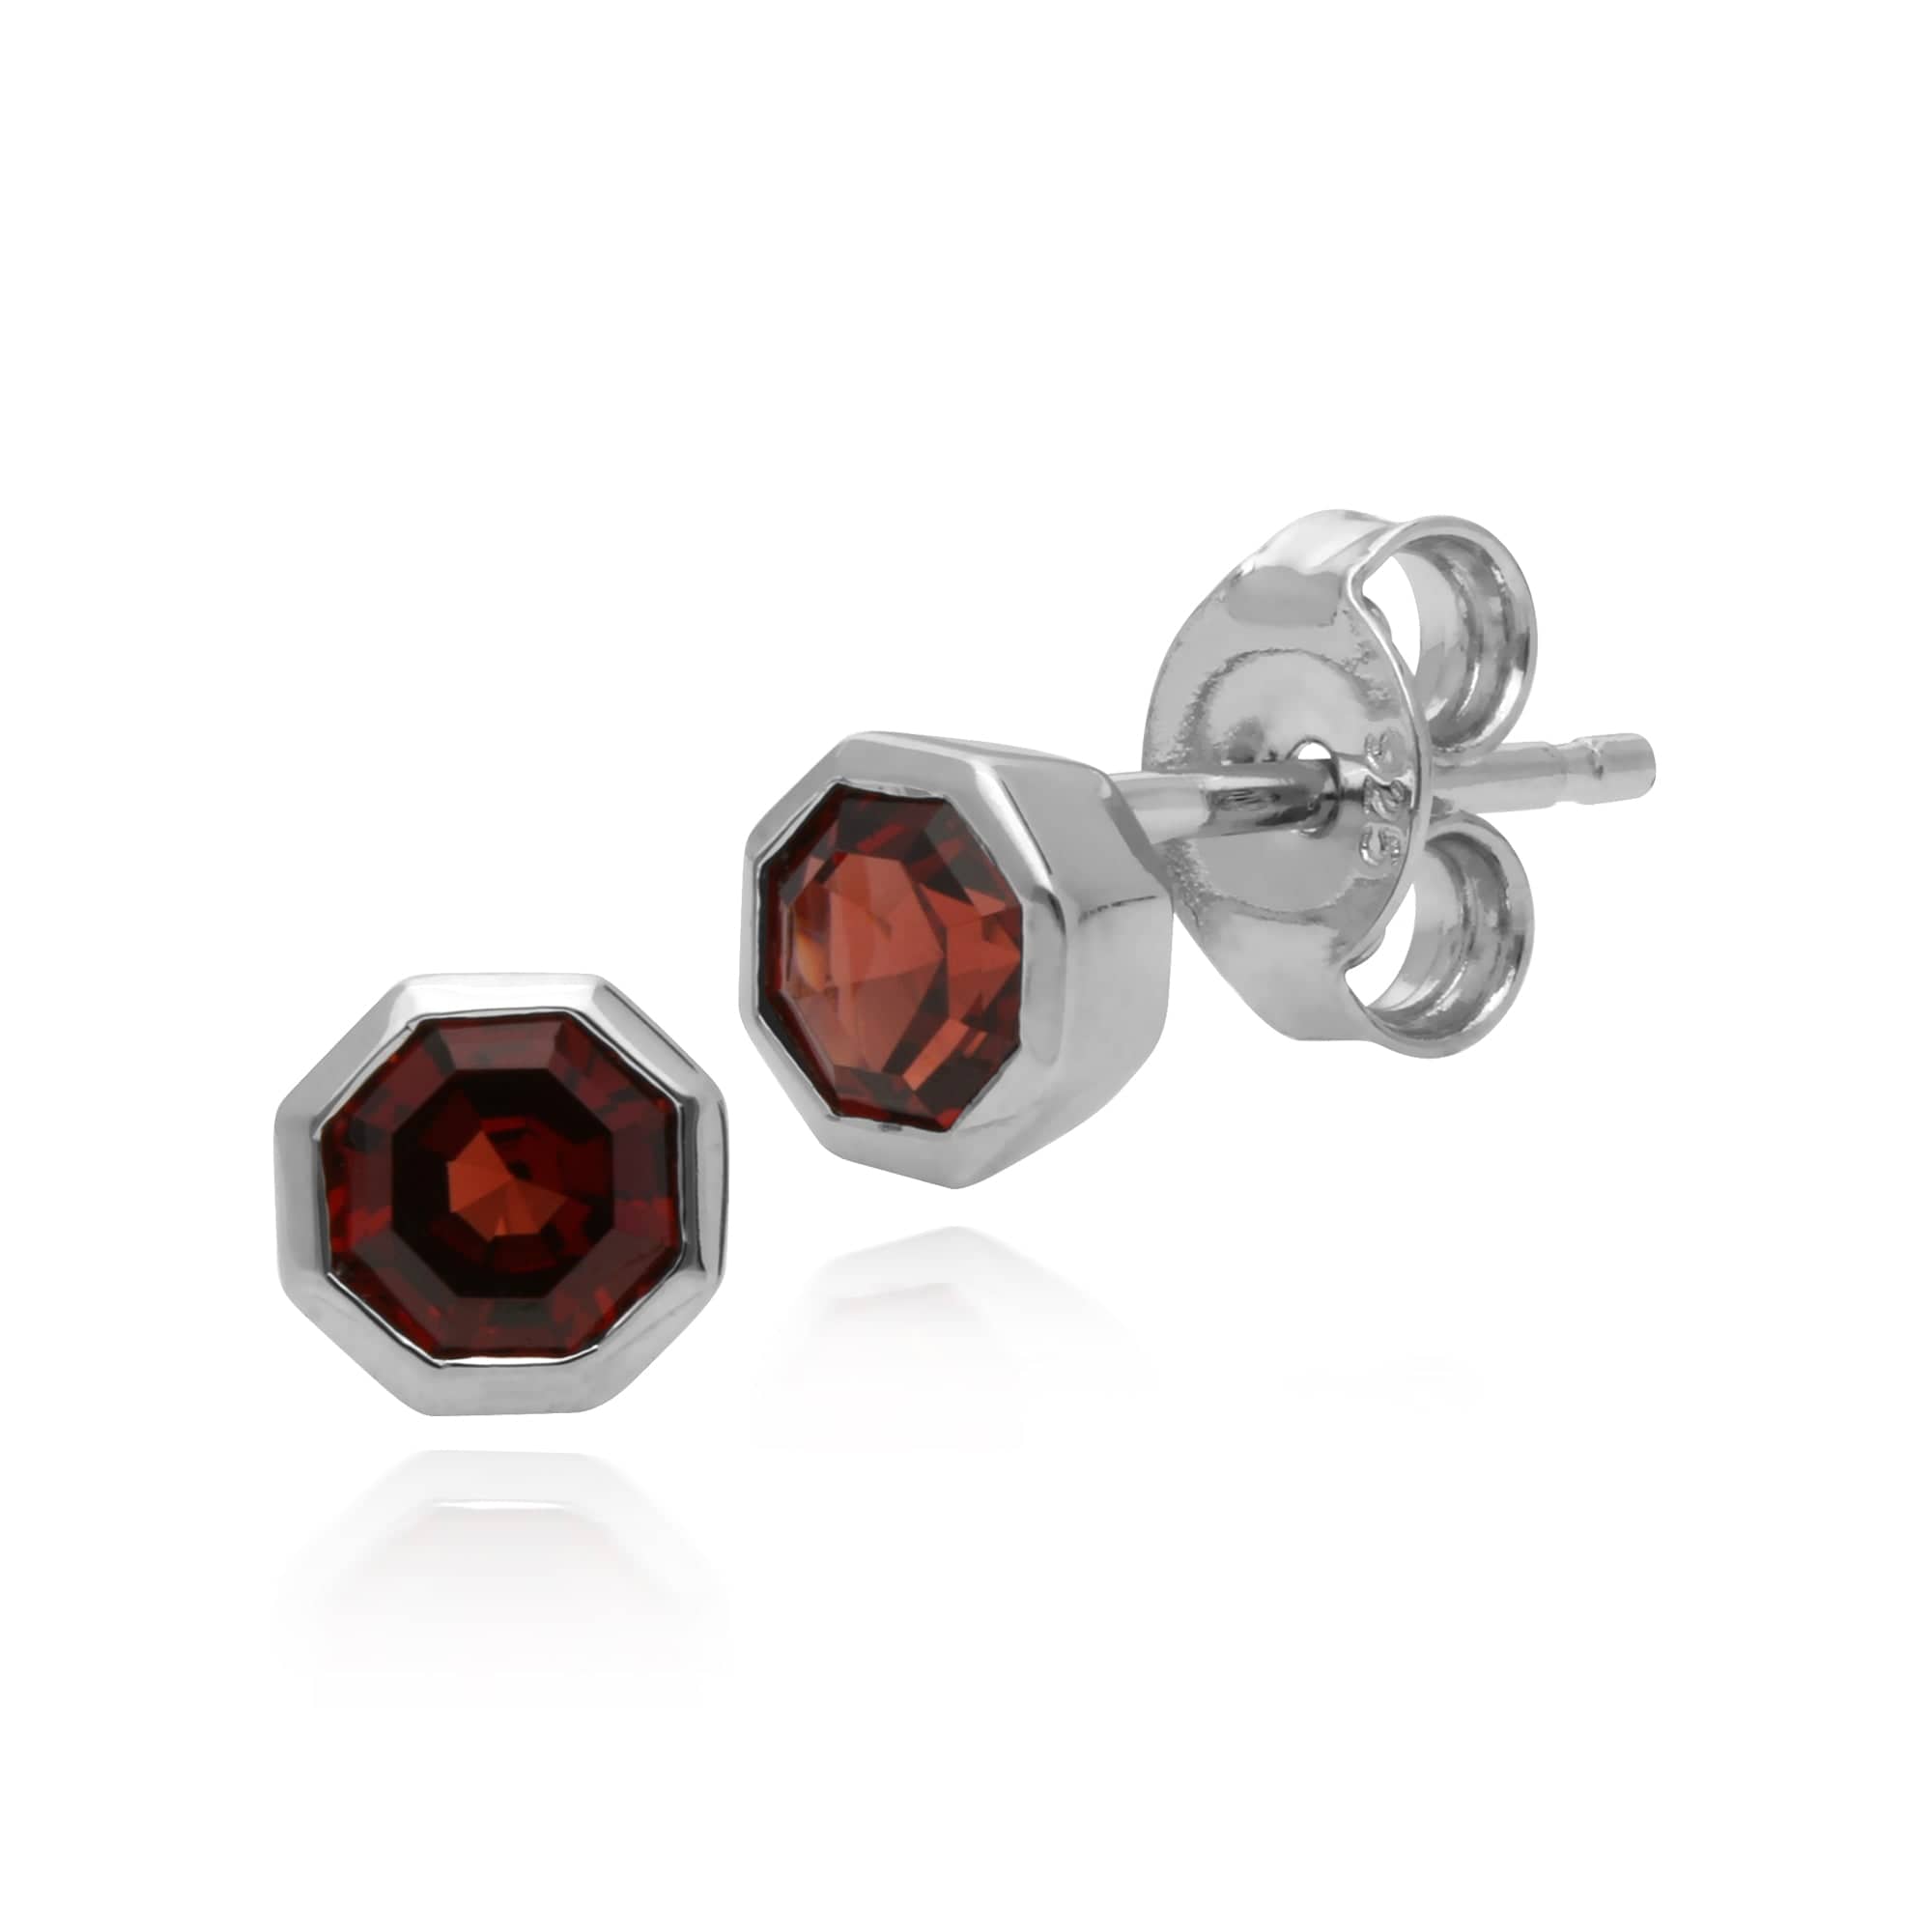 Geometric Octagon Garnet Bezel Set Stud Earrings in 925 Silver - Gemondo